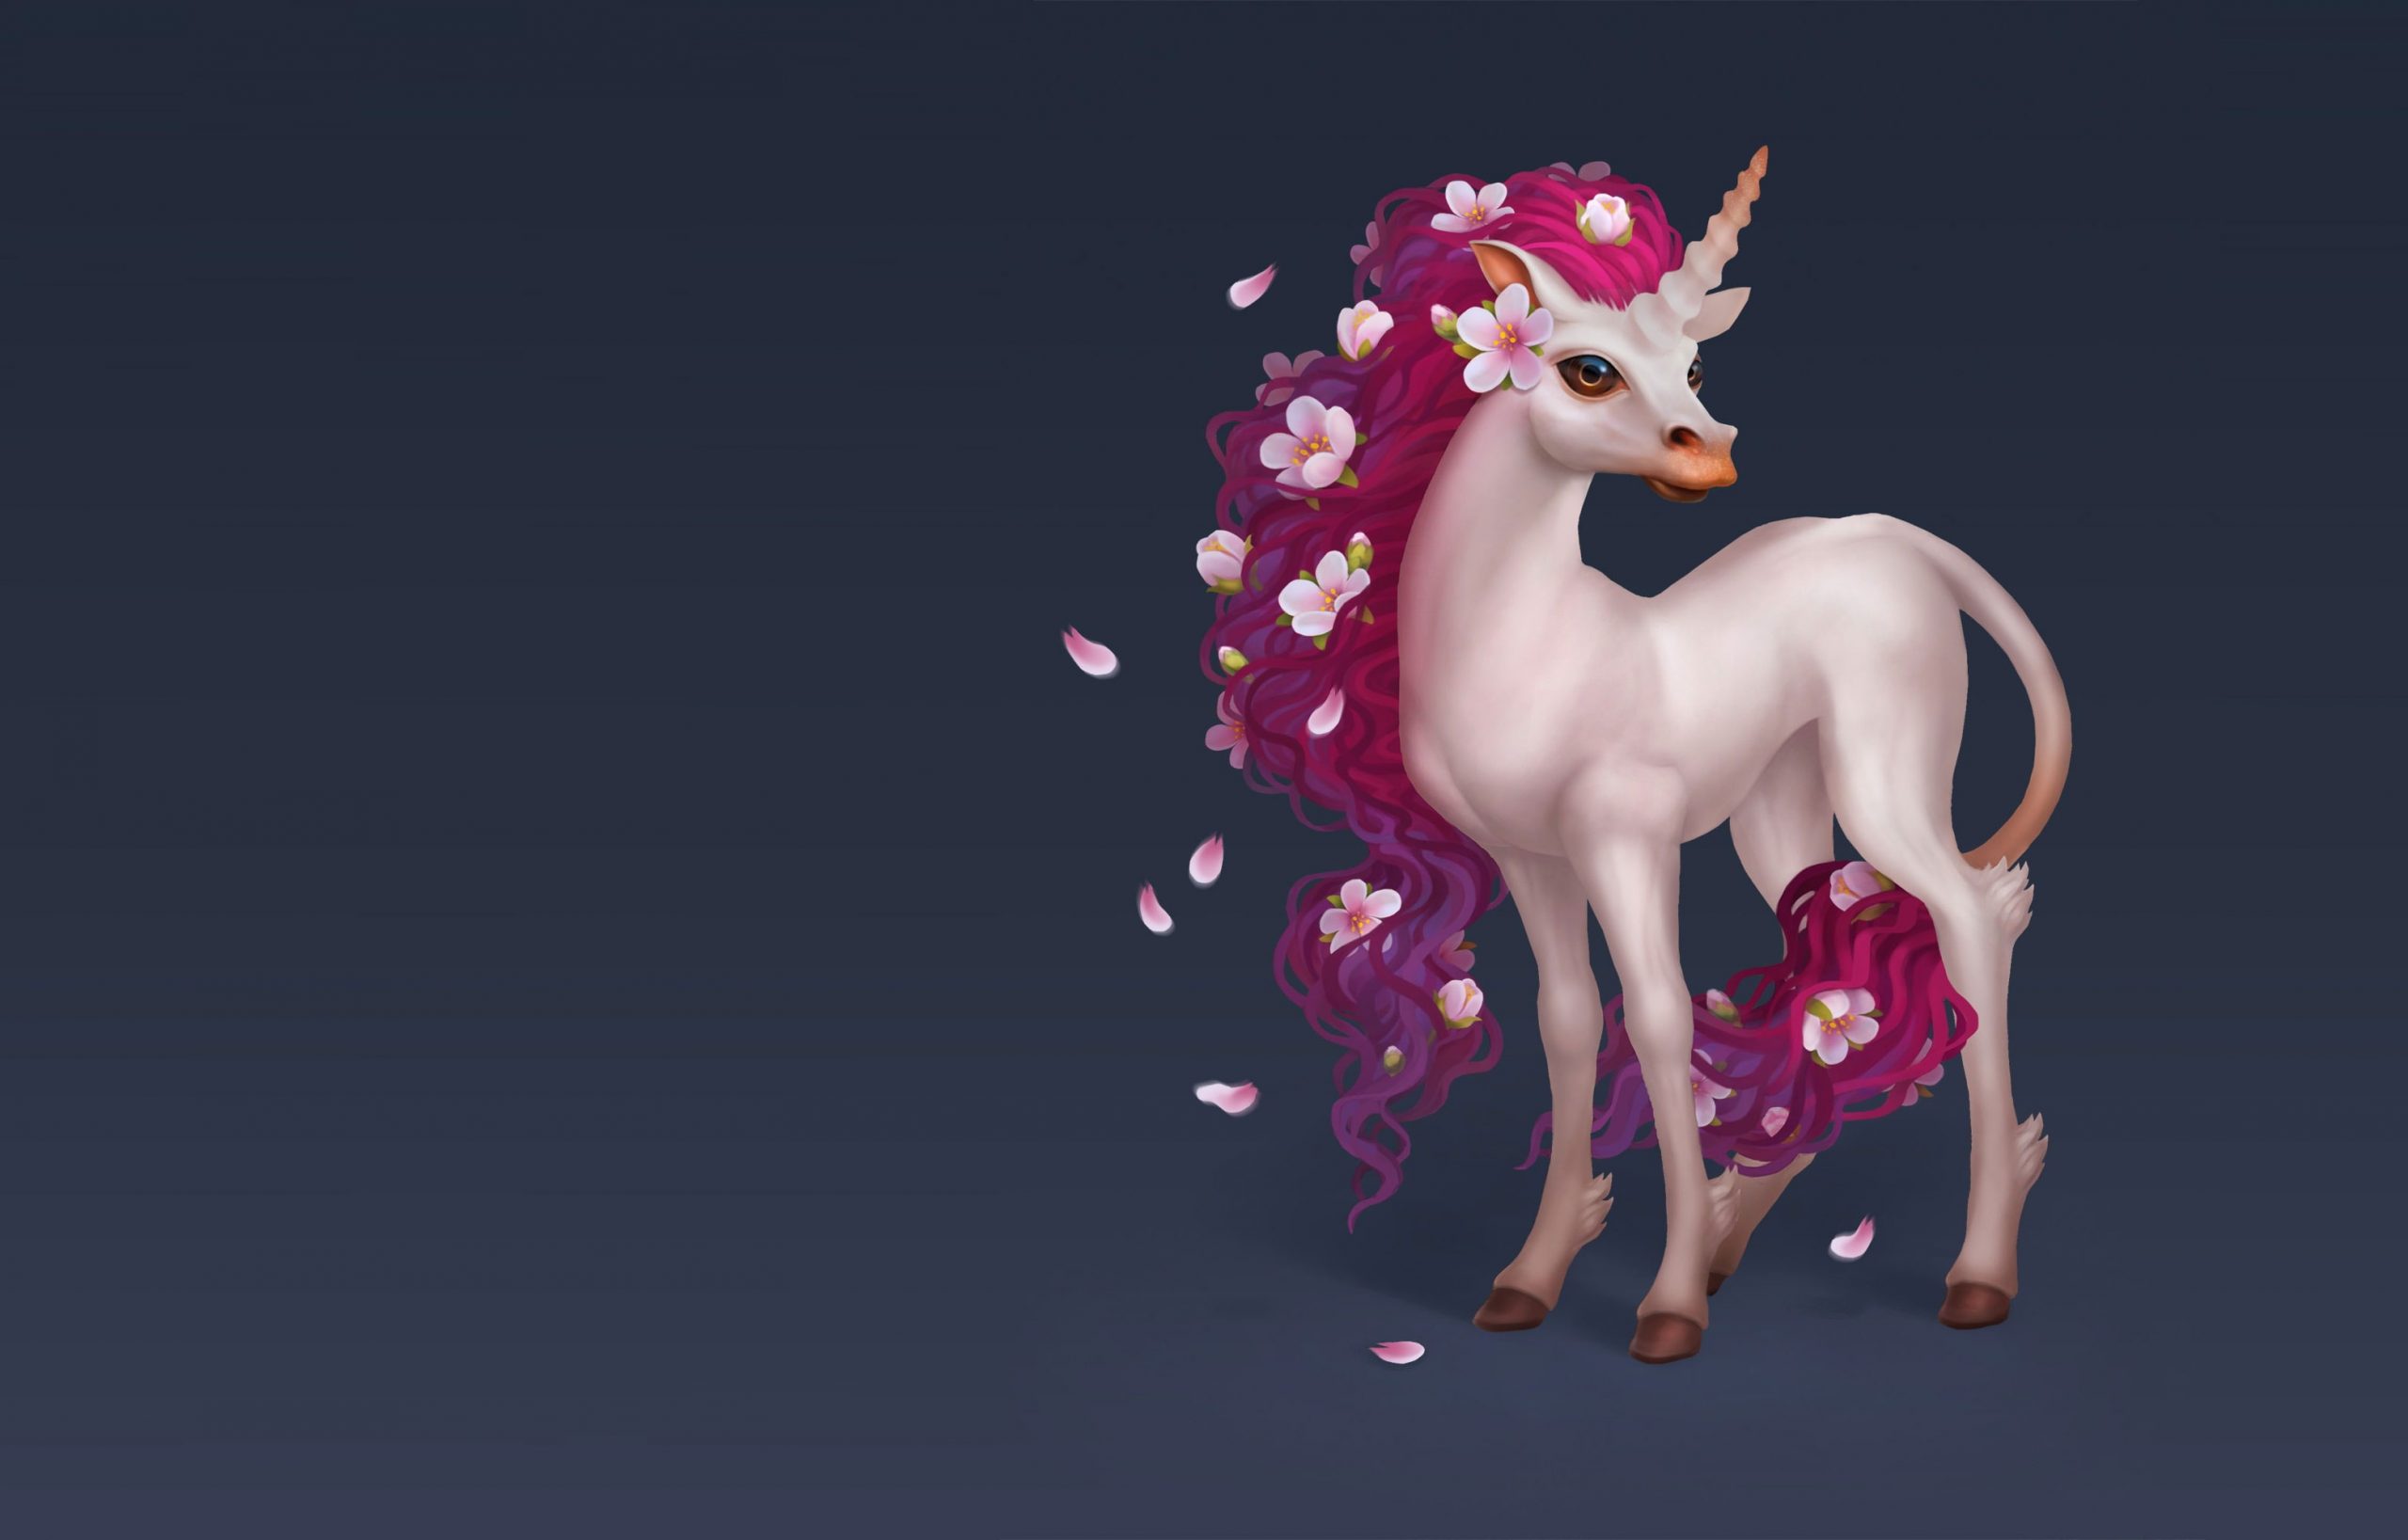 Wallpaper Flowers, Spring, Art, Unicorn, Children's, Animal • Wallpaper For You HD Wallpaper For Desktop & Mobile